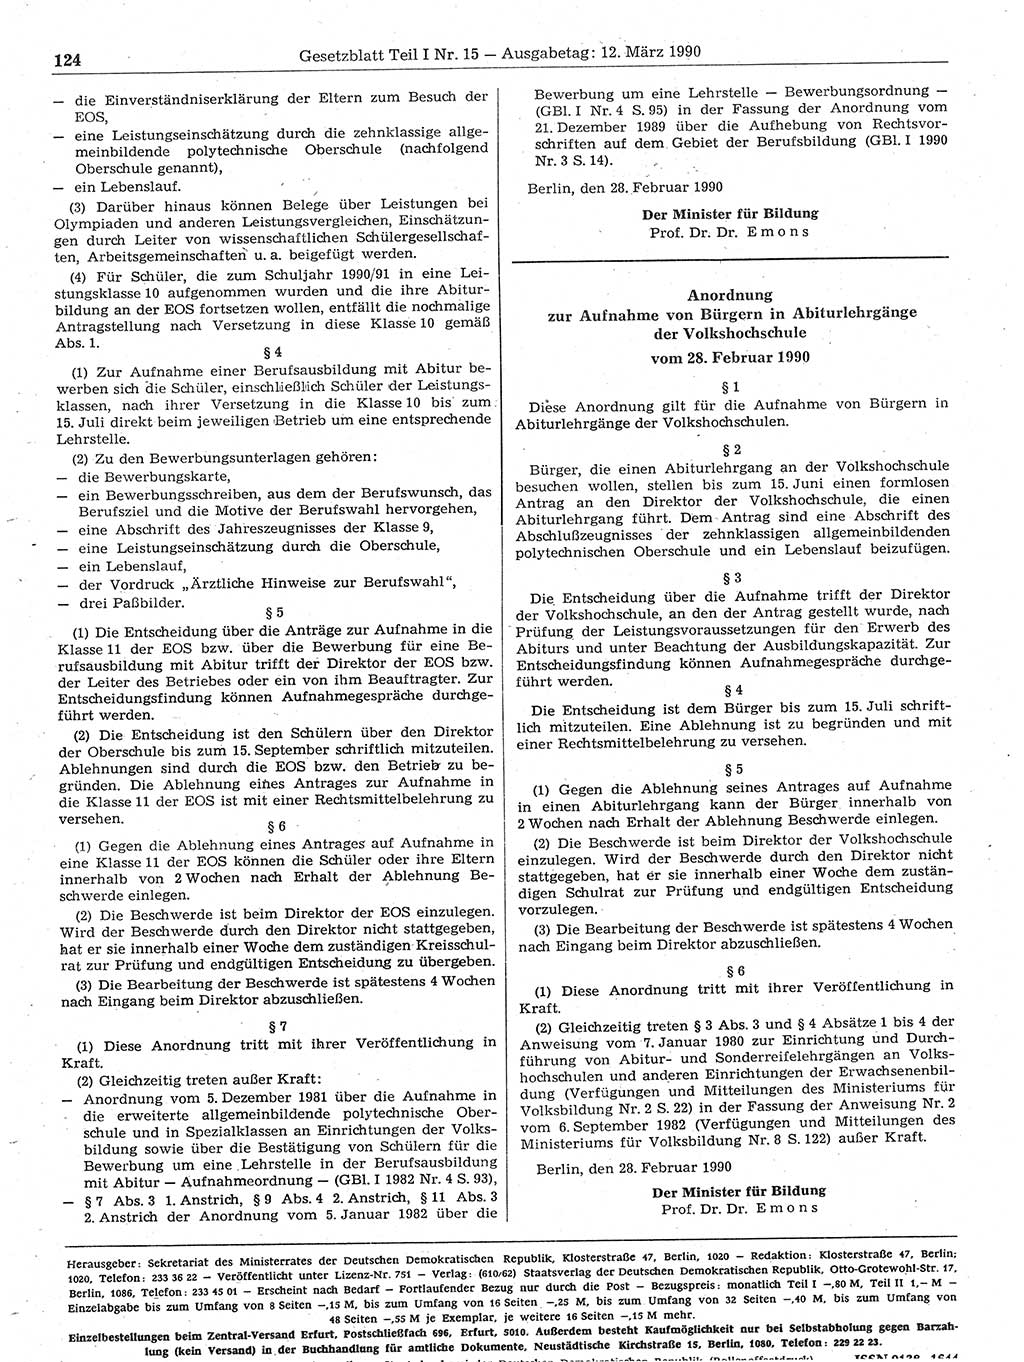 Gesetzblatt (GBl.) der Deutschen Demokratischen Republik (DDR) Teil Ⅰ 1990, Seite 124 (GBl. DDR Ⅰ 1990, S. 124)